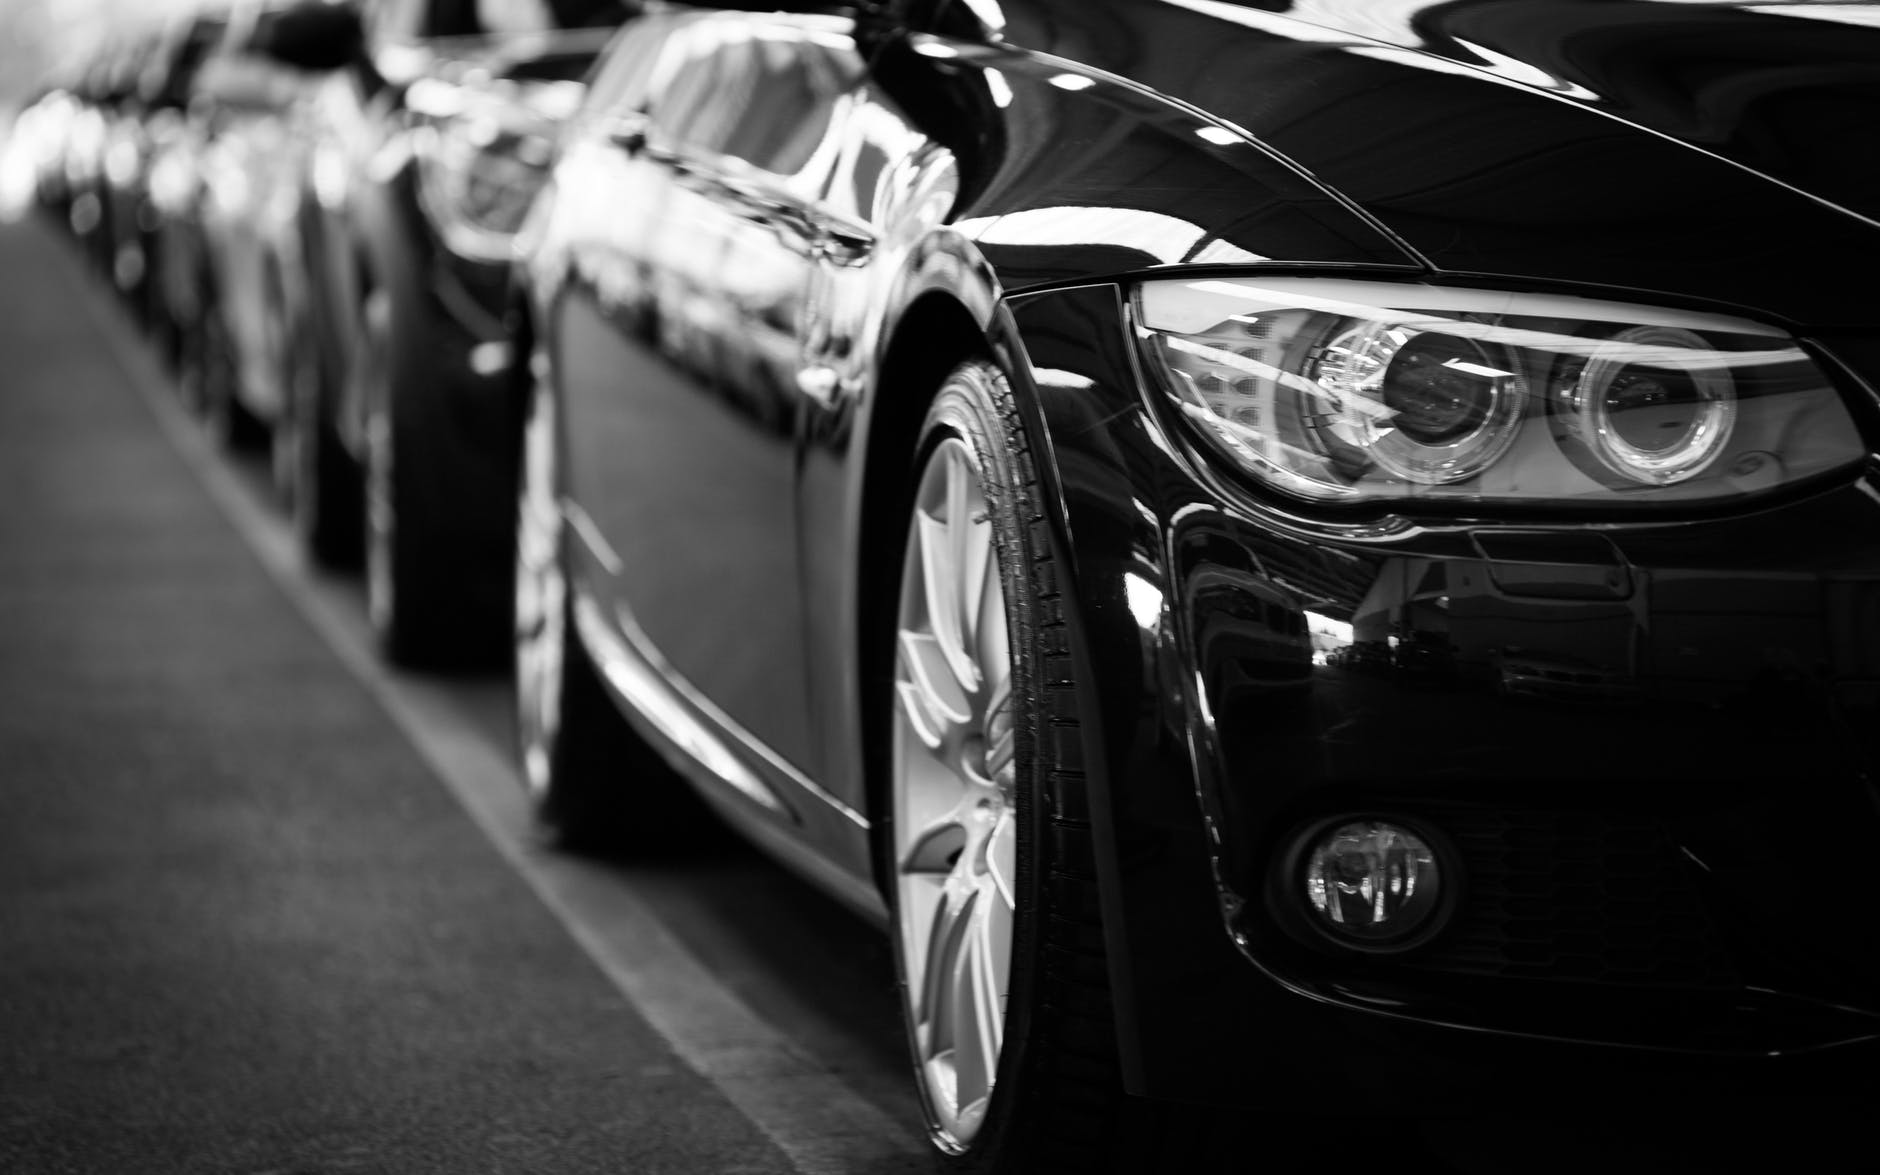 Assegurances de vehicles per a negocis i empreses - Asseguris